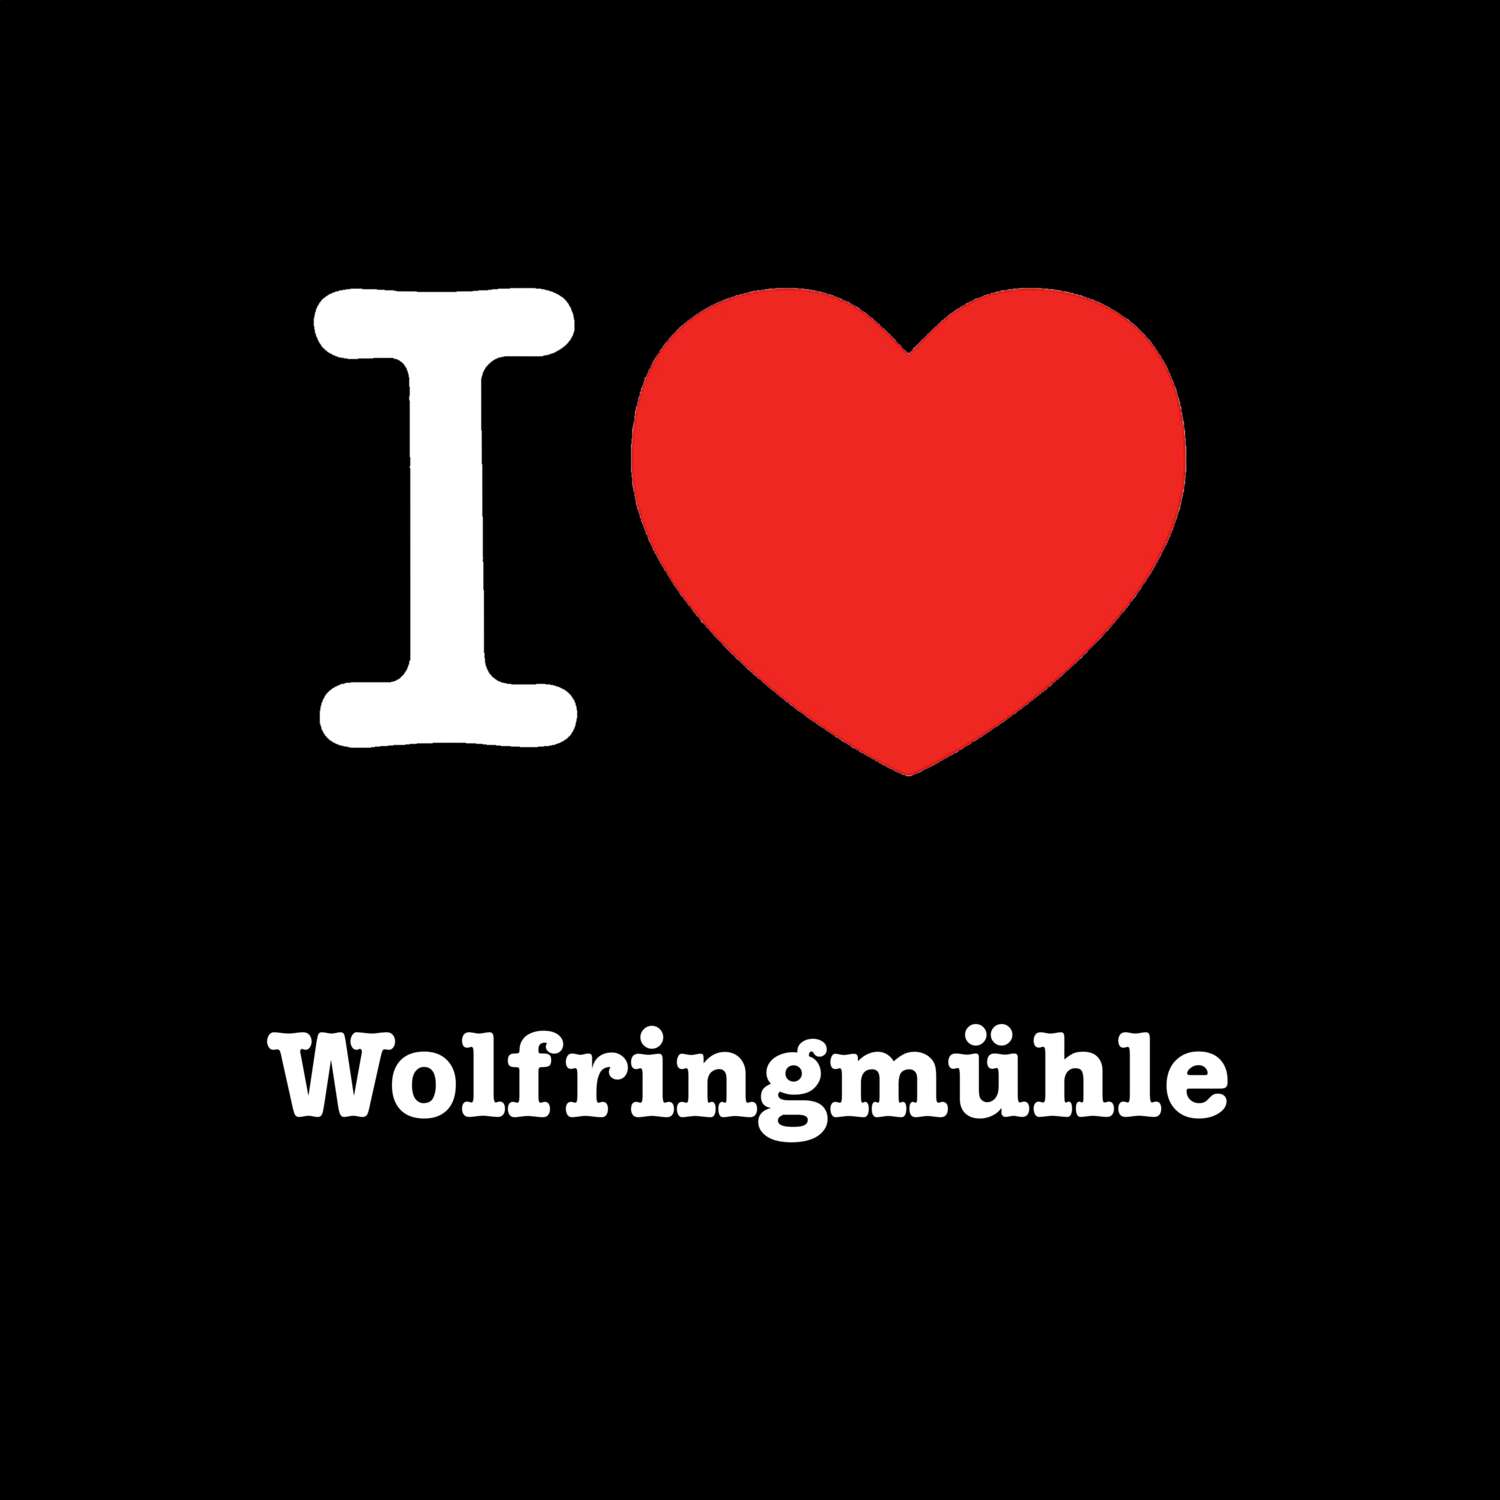 Wolfringmühle T-Shirt »I love«